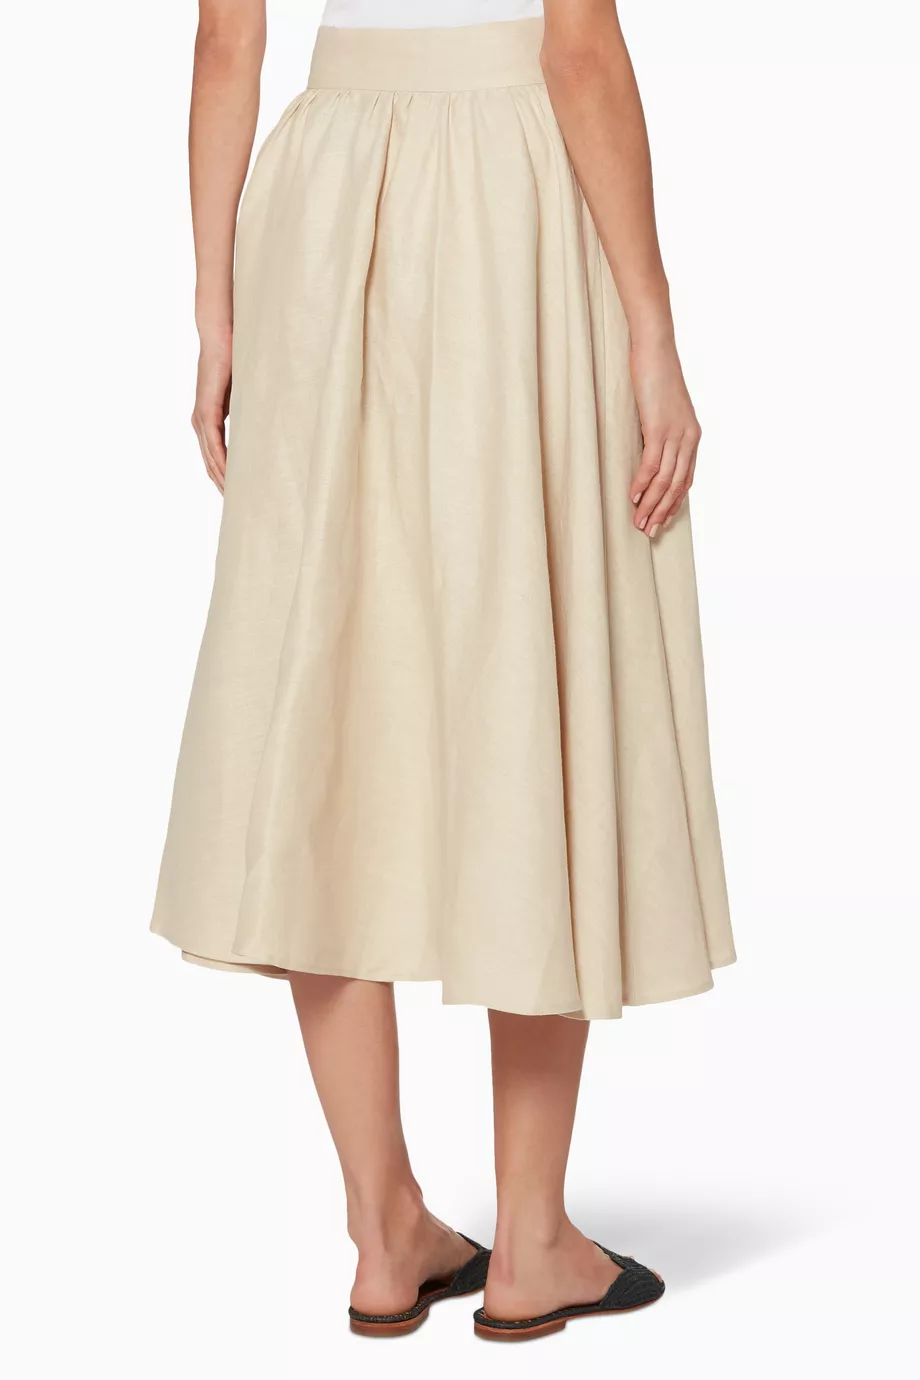 Full Midi Skirt, Custom Skirt, Beige High Waist Skirt, Pleated